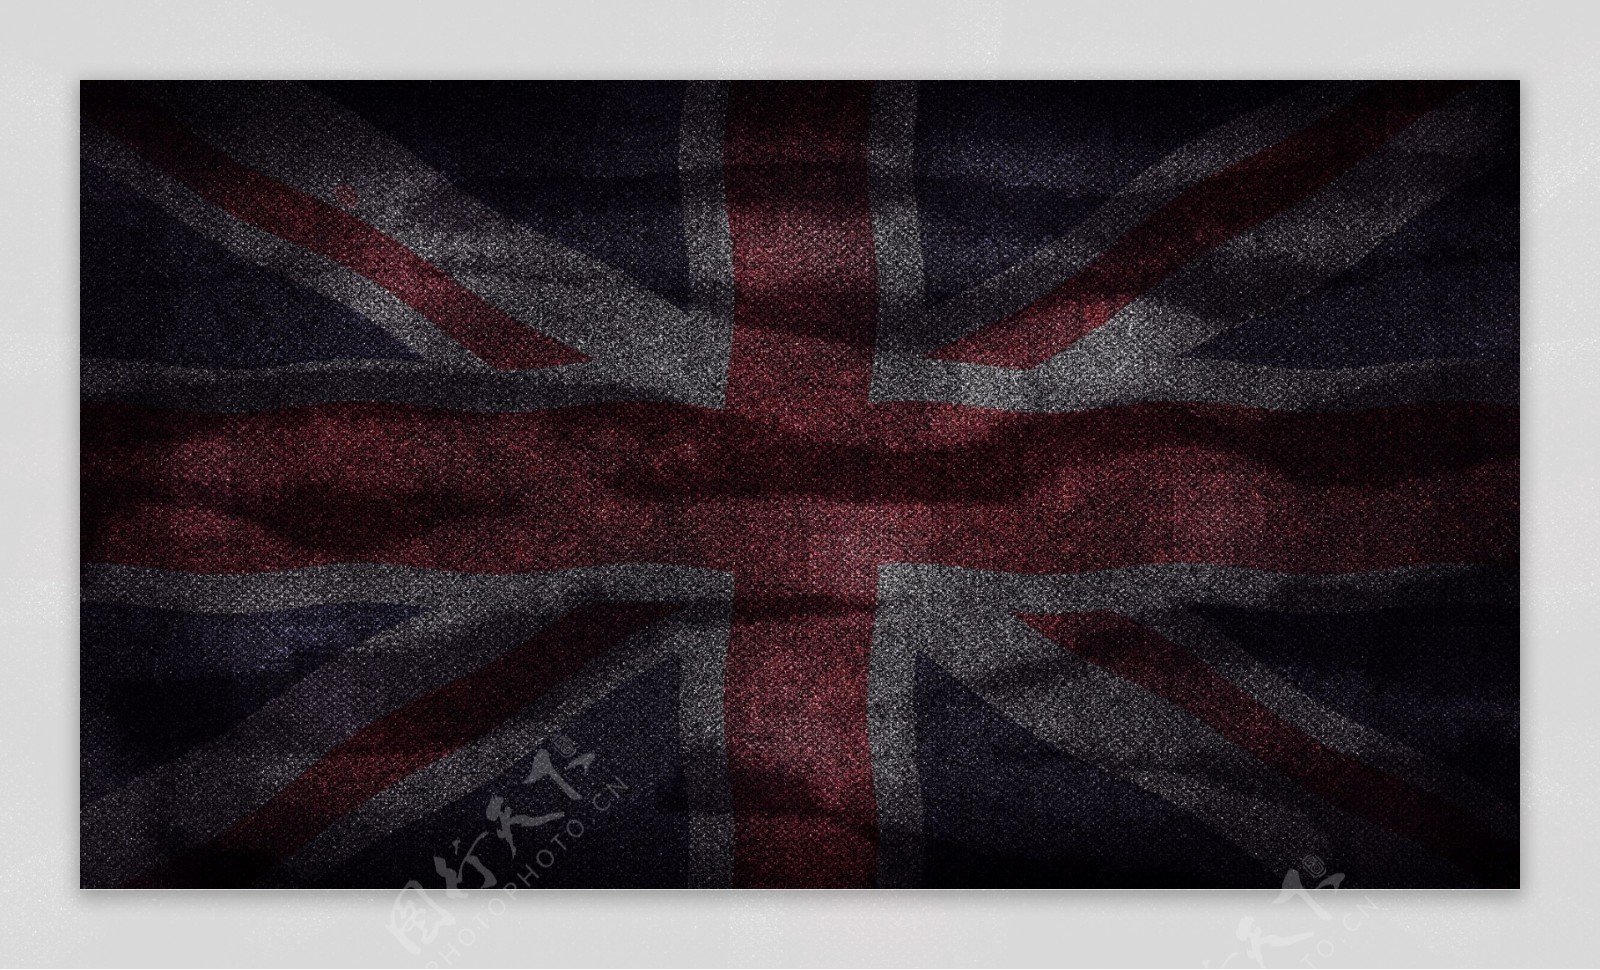 英国国旗图片